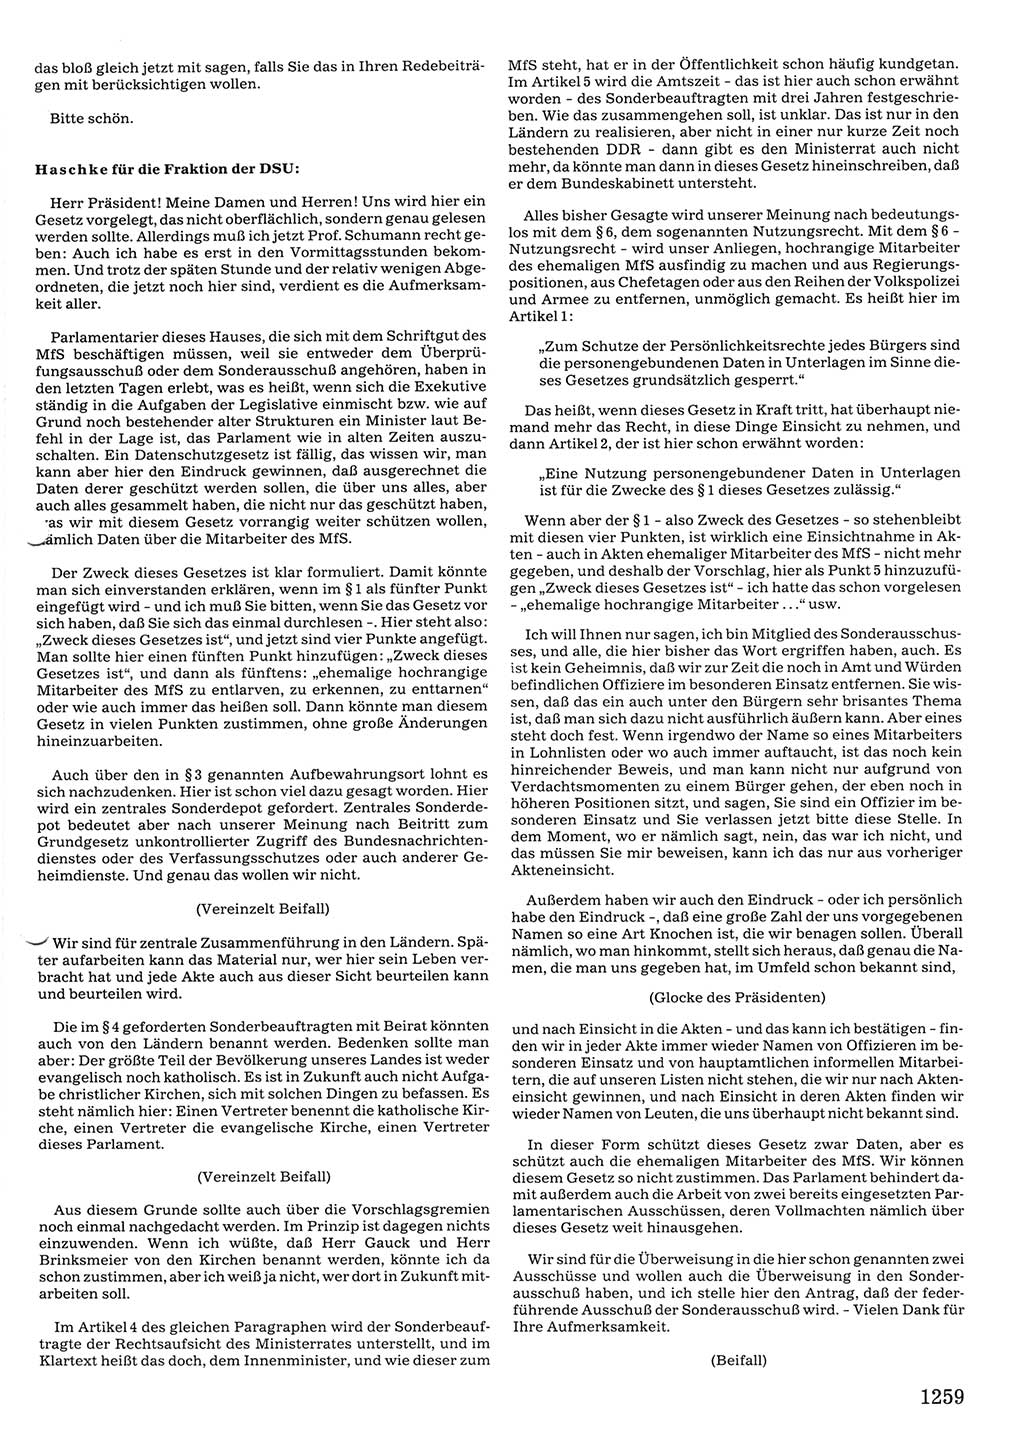 Tagungen der Volkskammer (VK) der Deutschen Demokratischen Republik (DDR), 10. Wahlperiode 1990, Seite 1259 (VK. DDR 10. WP. 1990, Prot. Tg. 1-38, 5.4.-2.10.1990, S. 1259)